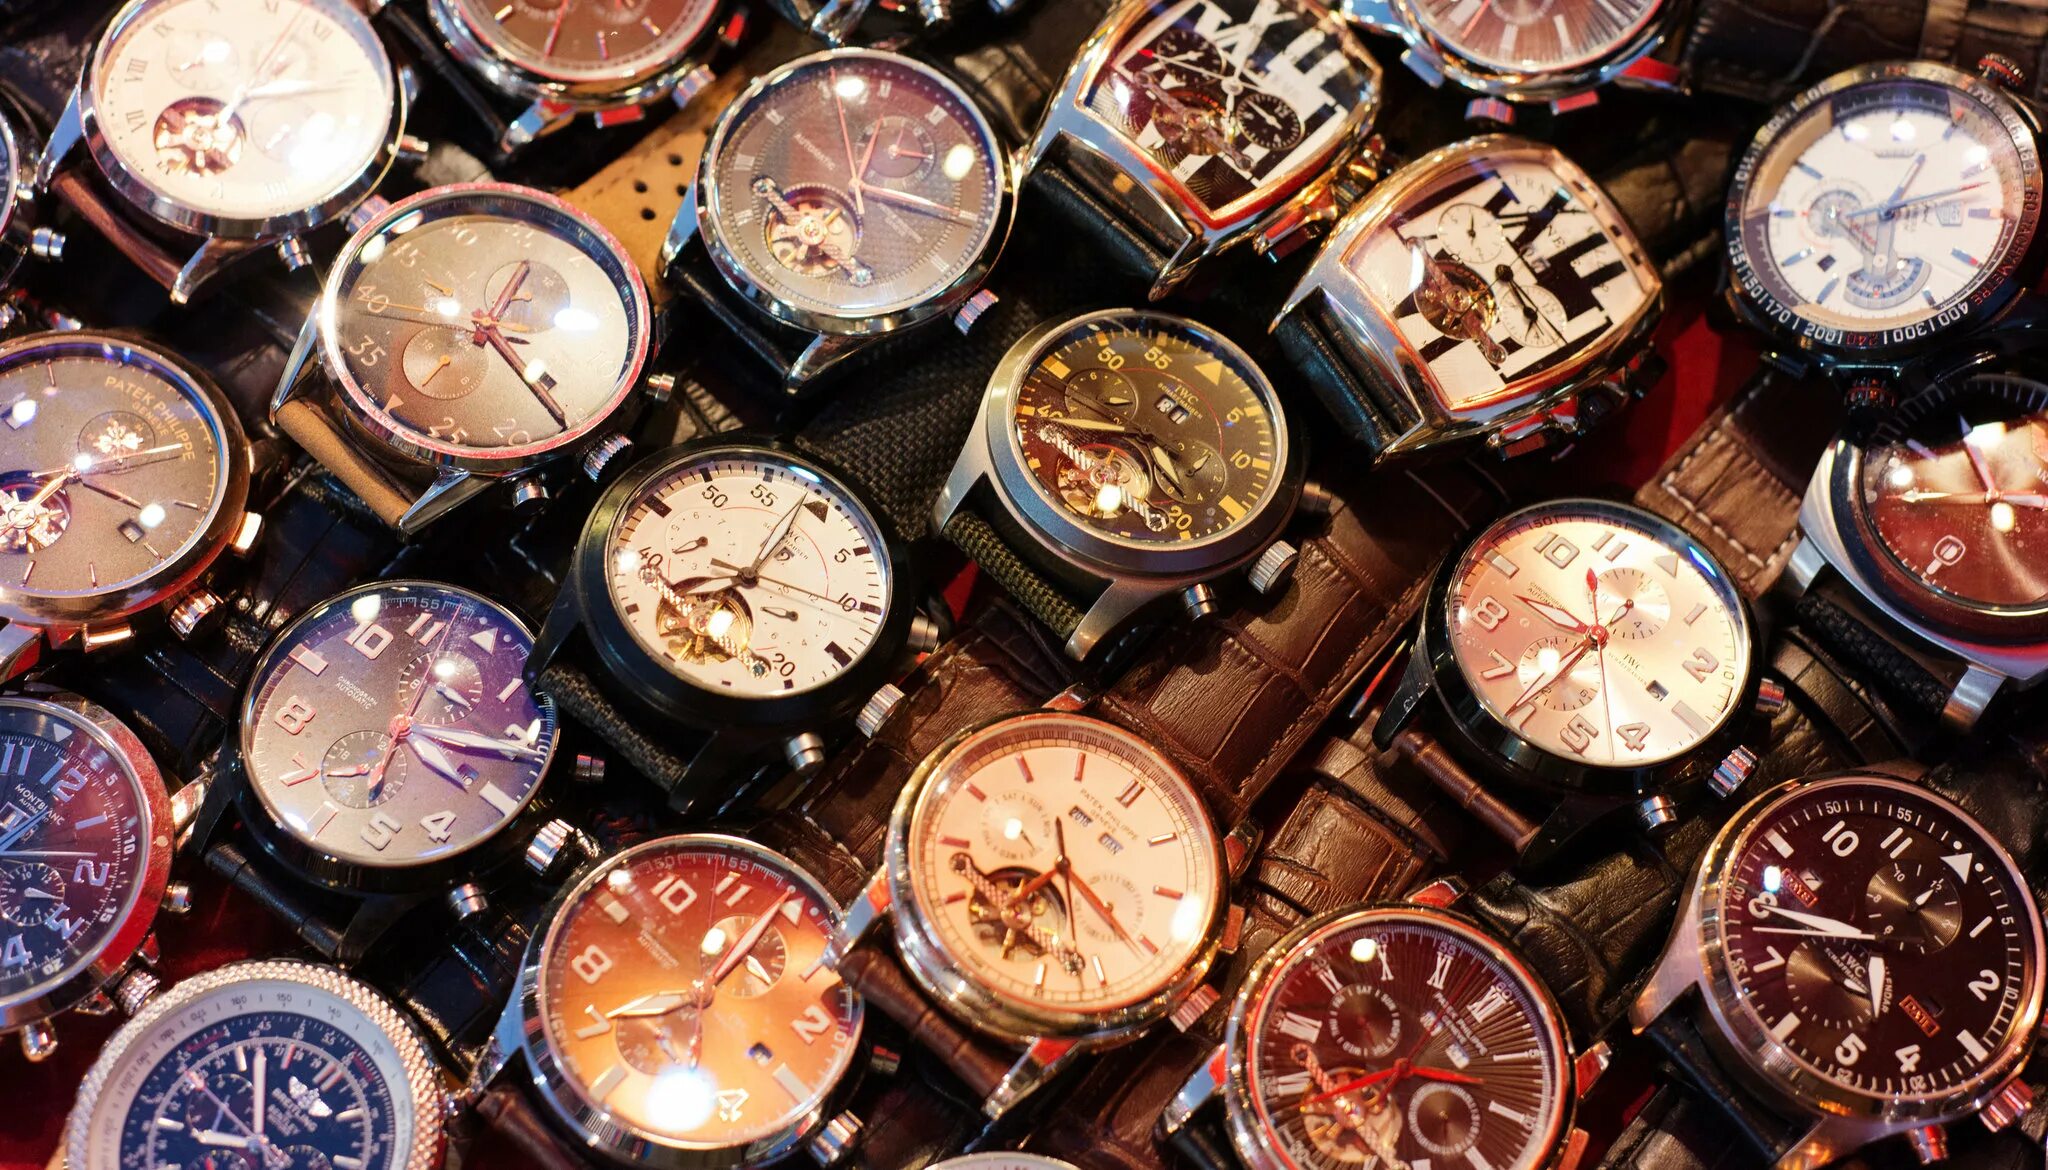 Famous watches. Watch brands. Часы оптом. Картинка куча китайских поддельных часов. Watches sale.